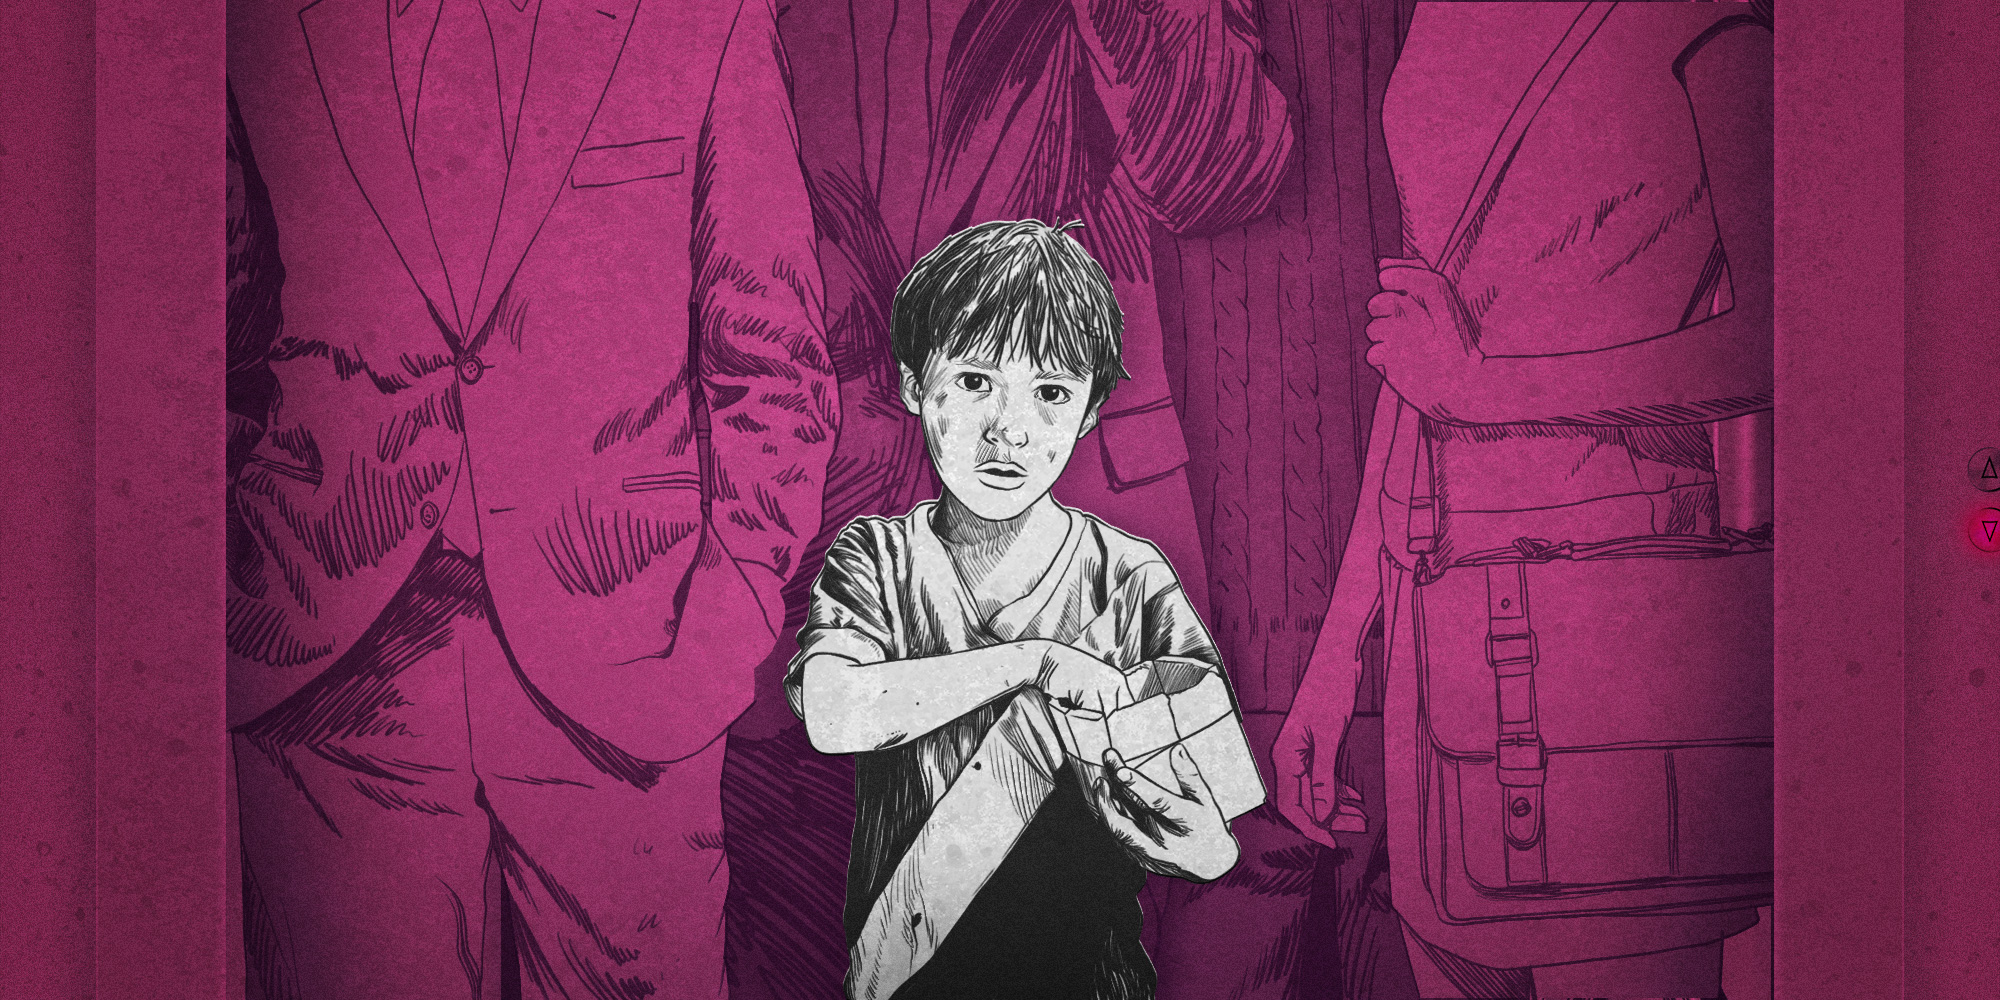 Niños explotados: la dura realidad de la infancia en México